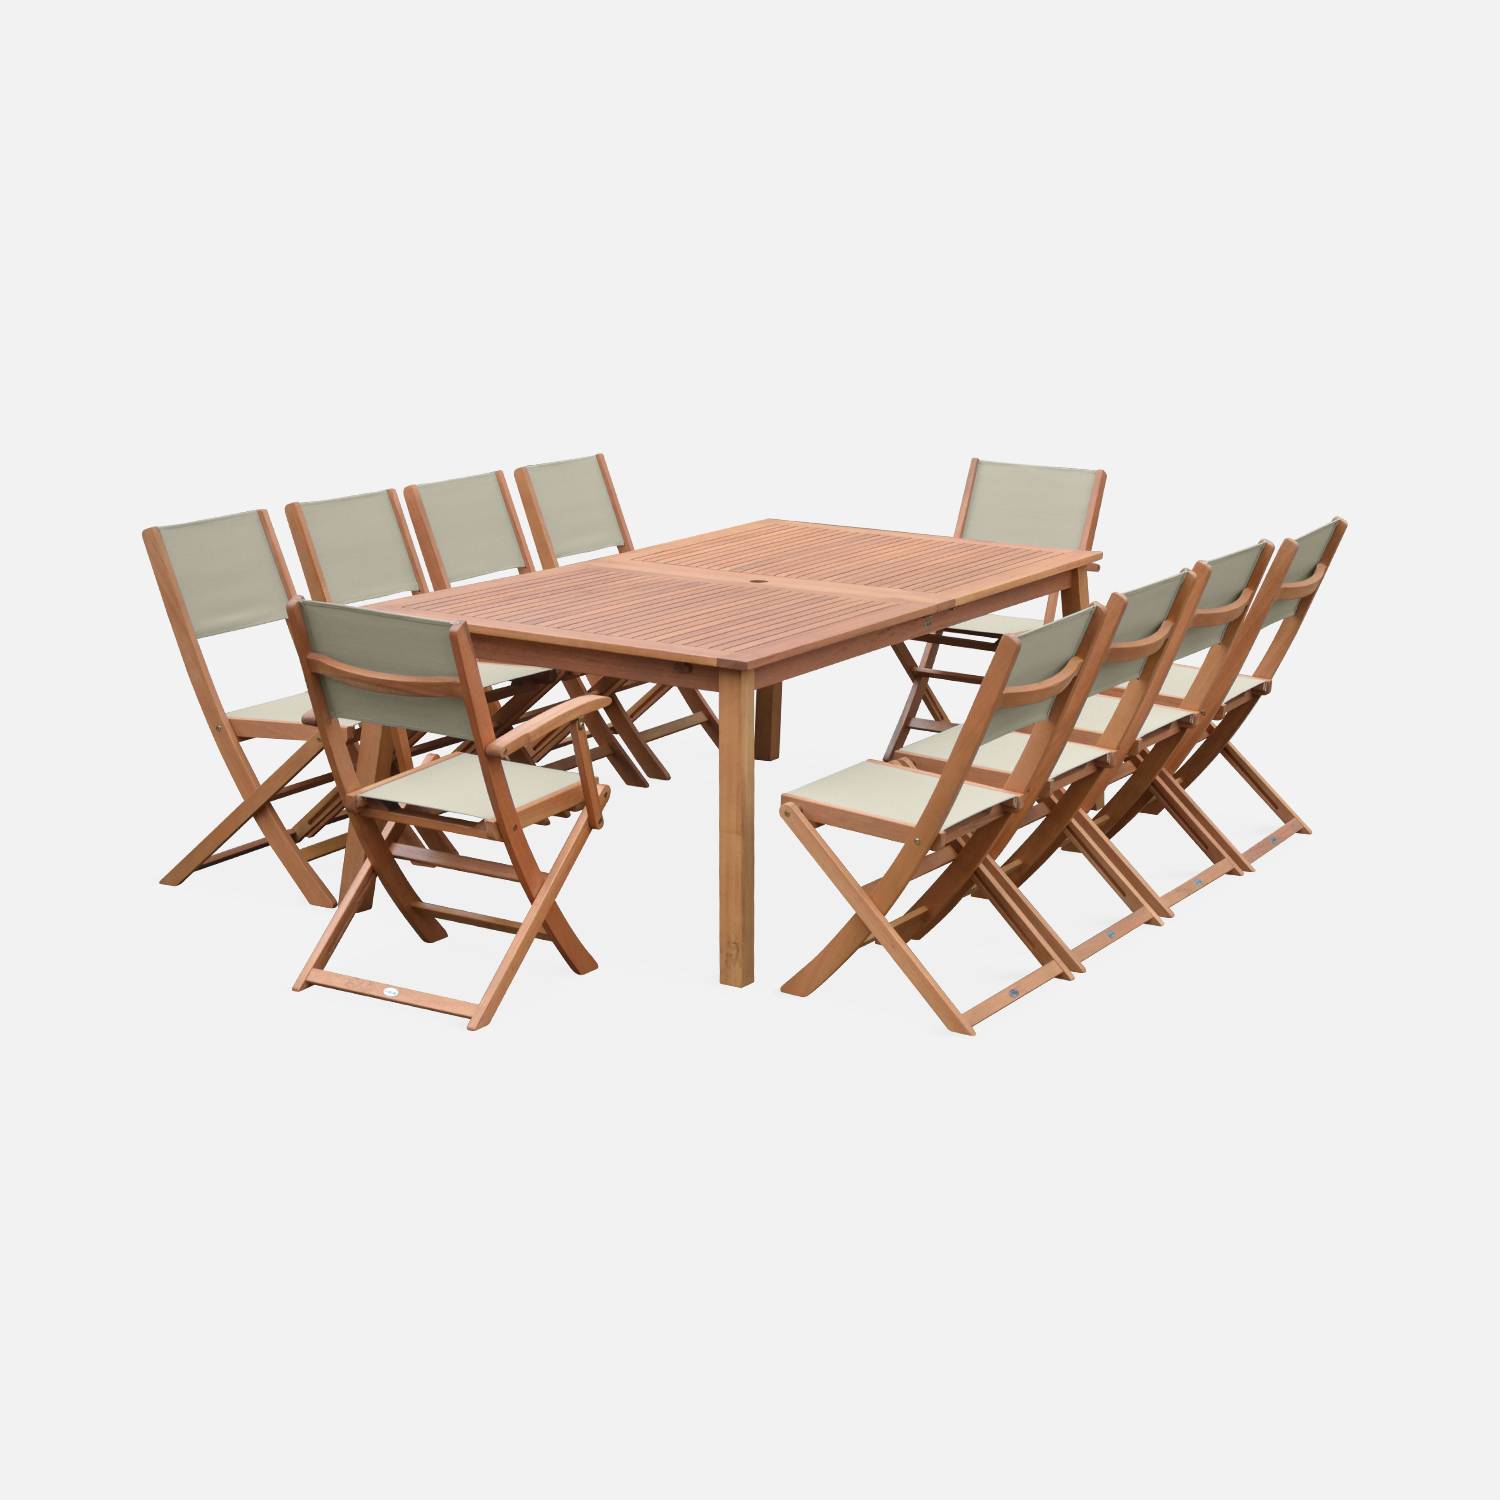 Ausziehbare Gartenmöbel aus Holz - Almeria Tisch 200/250/300cm mit 2 Verlängerungen, 2 Sesseln und 8 Stühlen, aus geöltem FSC Eukalyptusholz und taupgrau Textilene,sweeek,Photo4